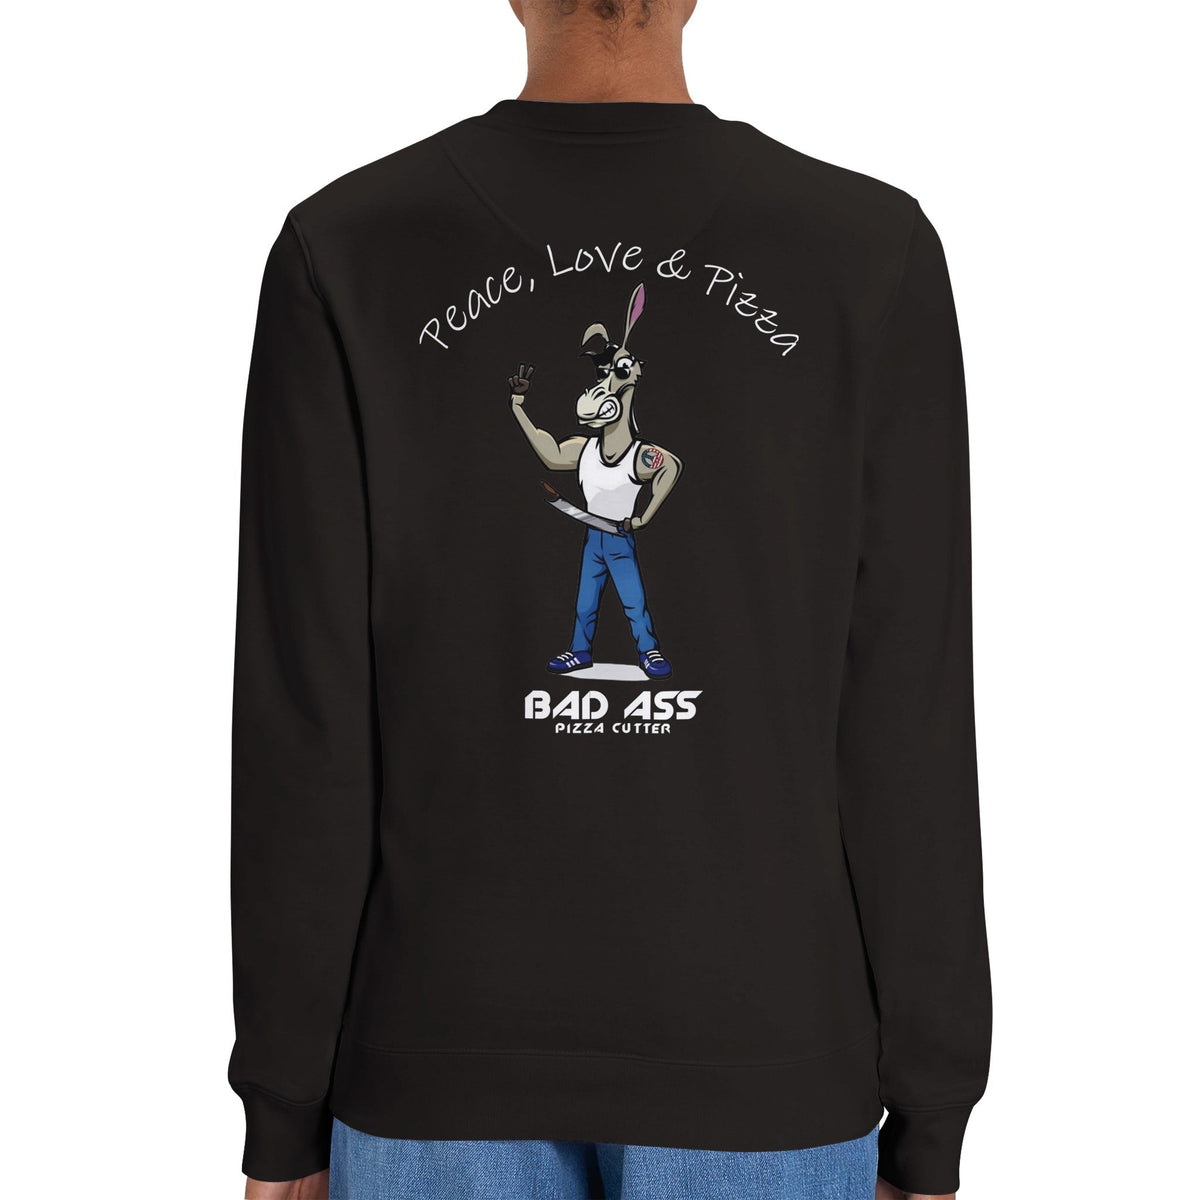 BAD ASS Peace, Love & Pizza Crewneck Sweatshirt - BAD ASS Pizza Cutter